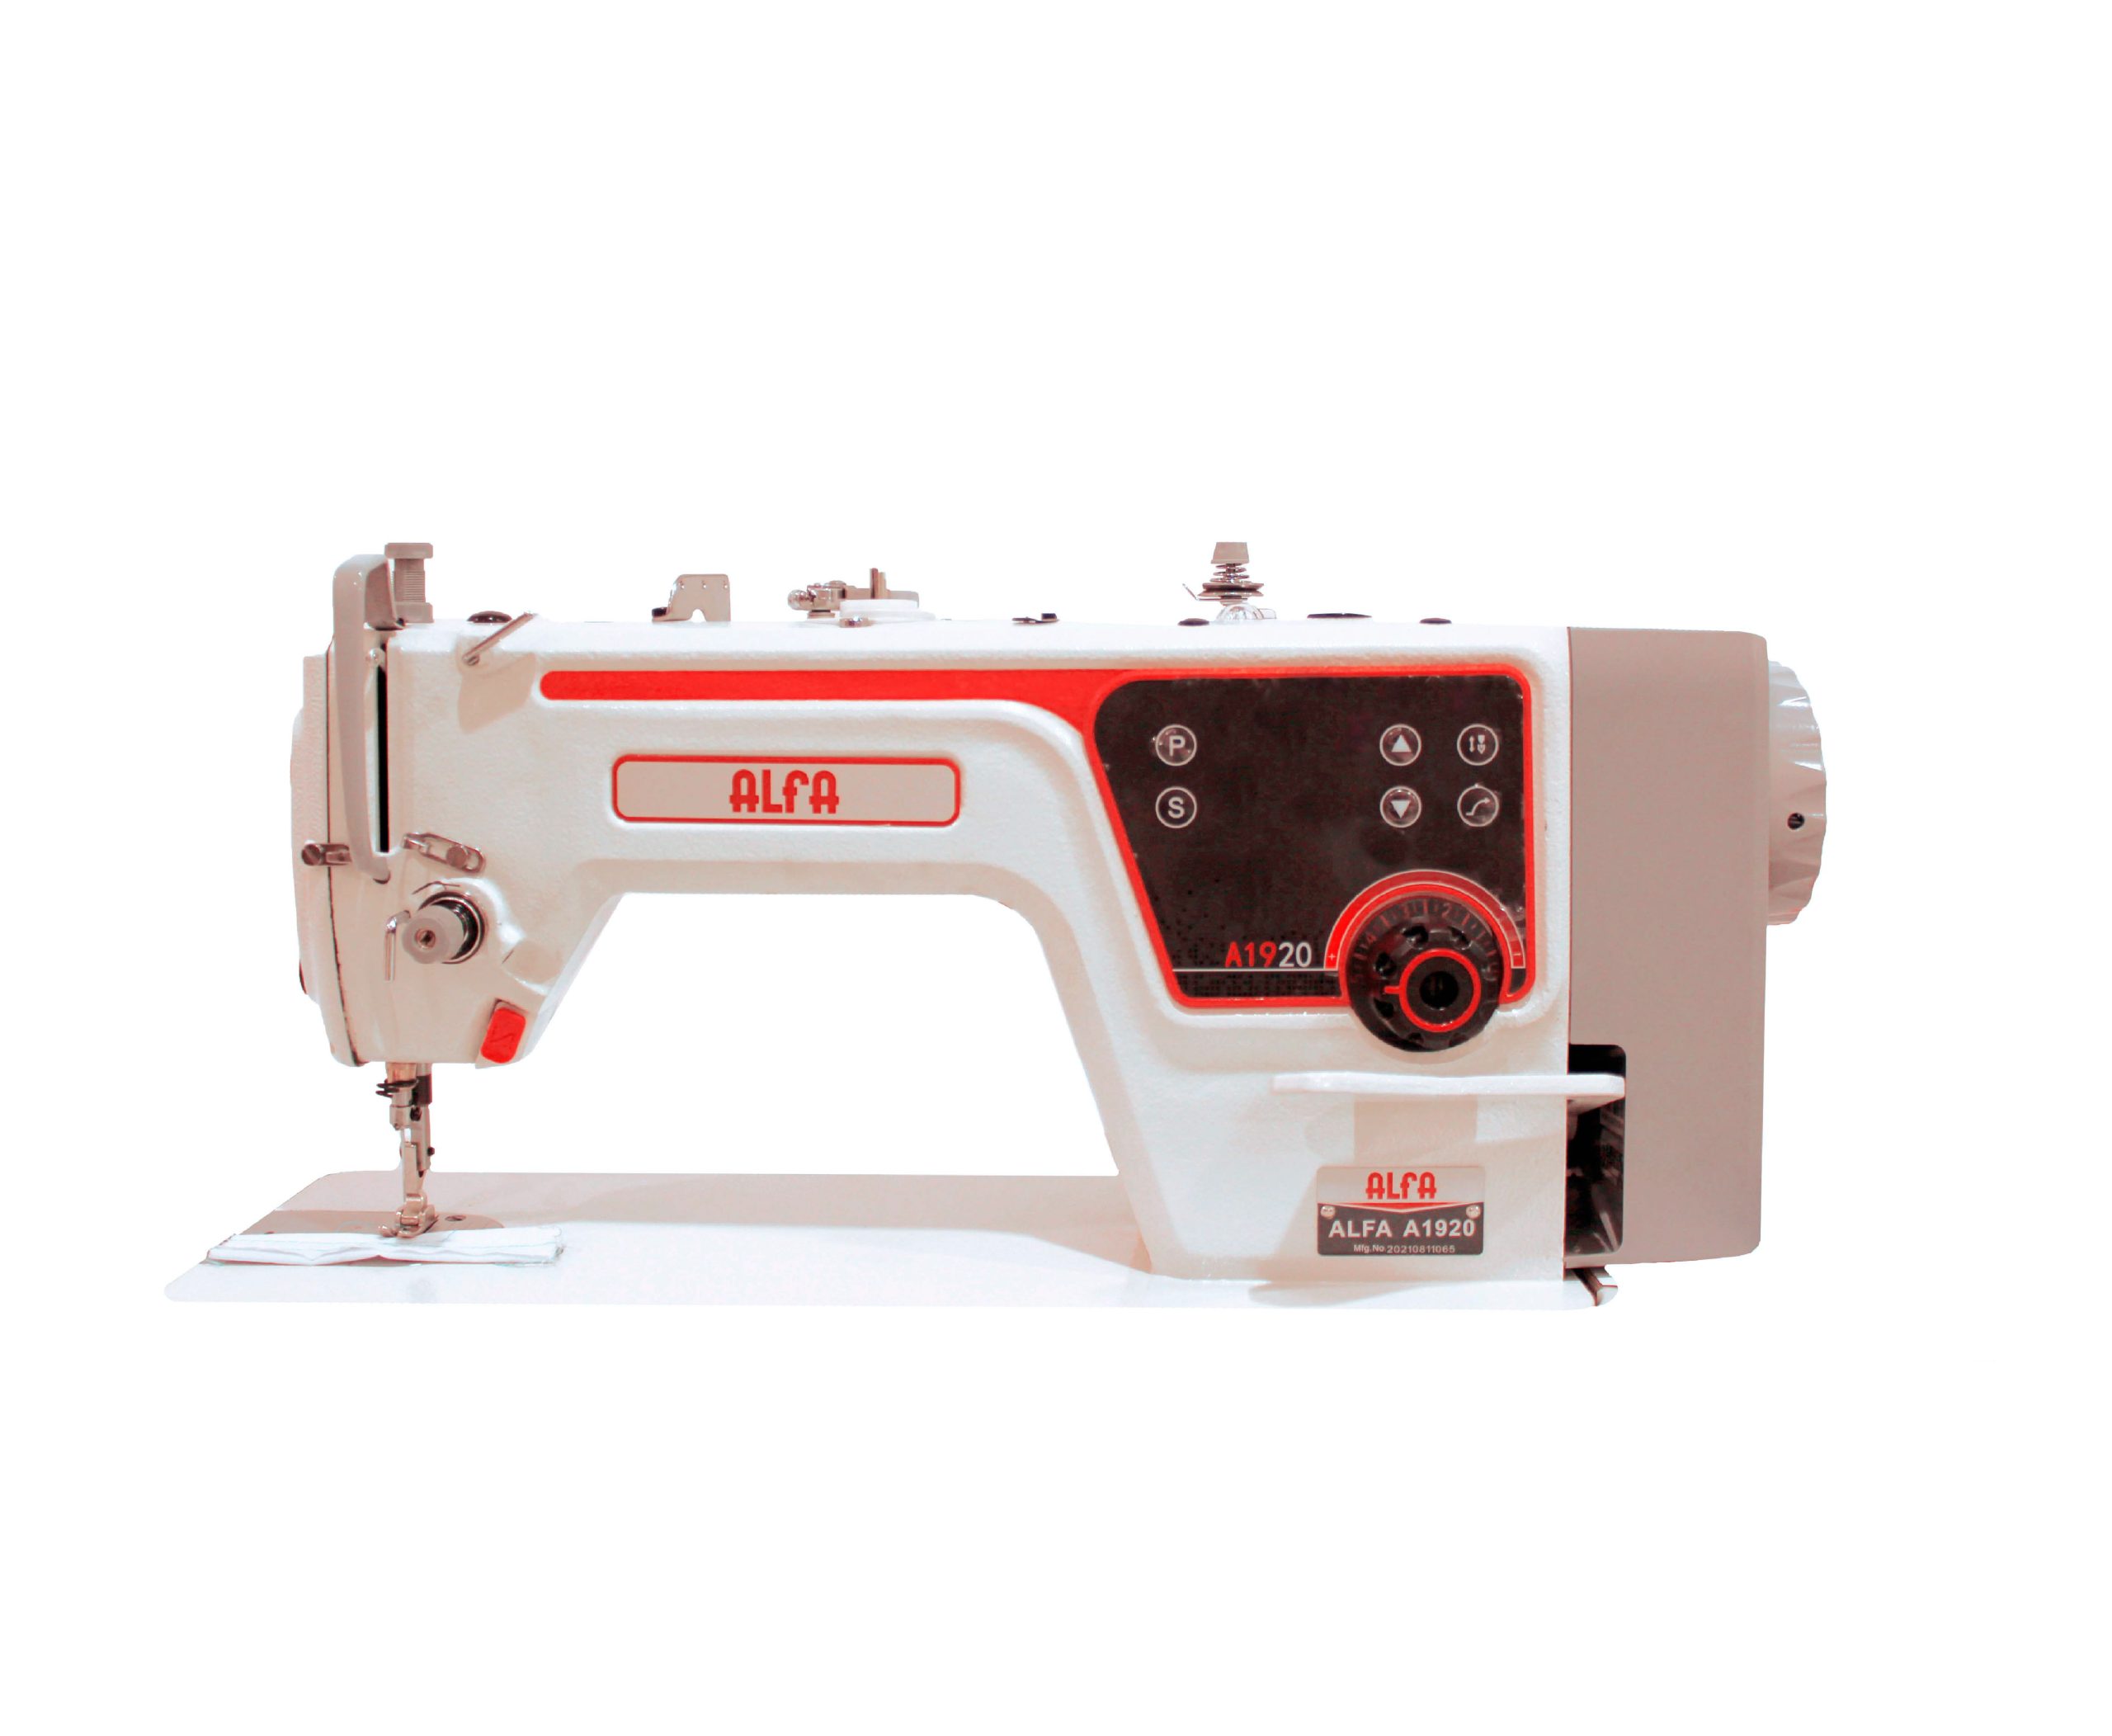 Kit prensatelas industriales Para máquinas de coser de pespunte recto